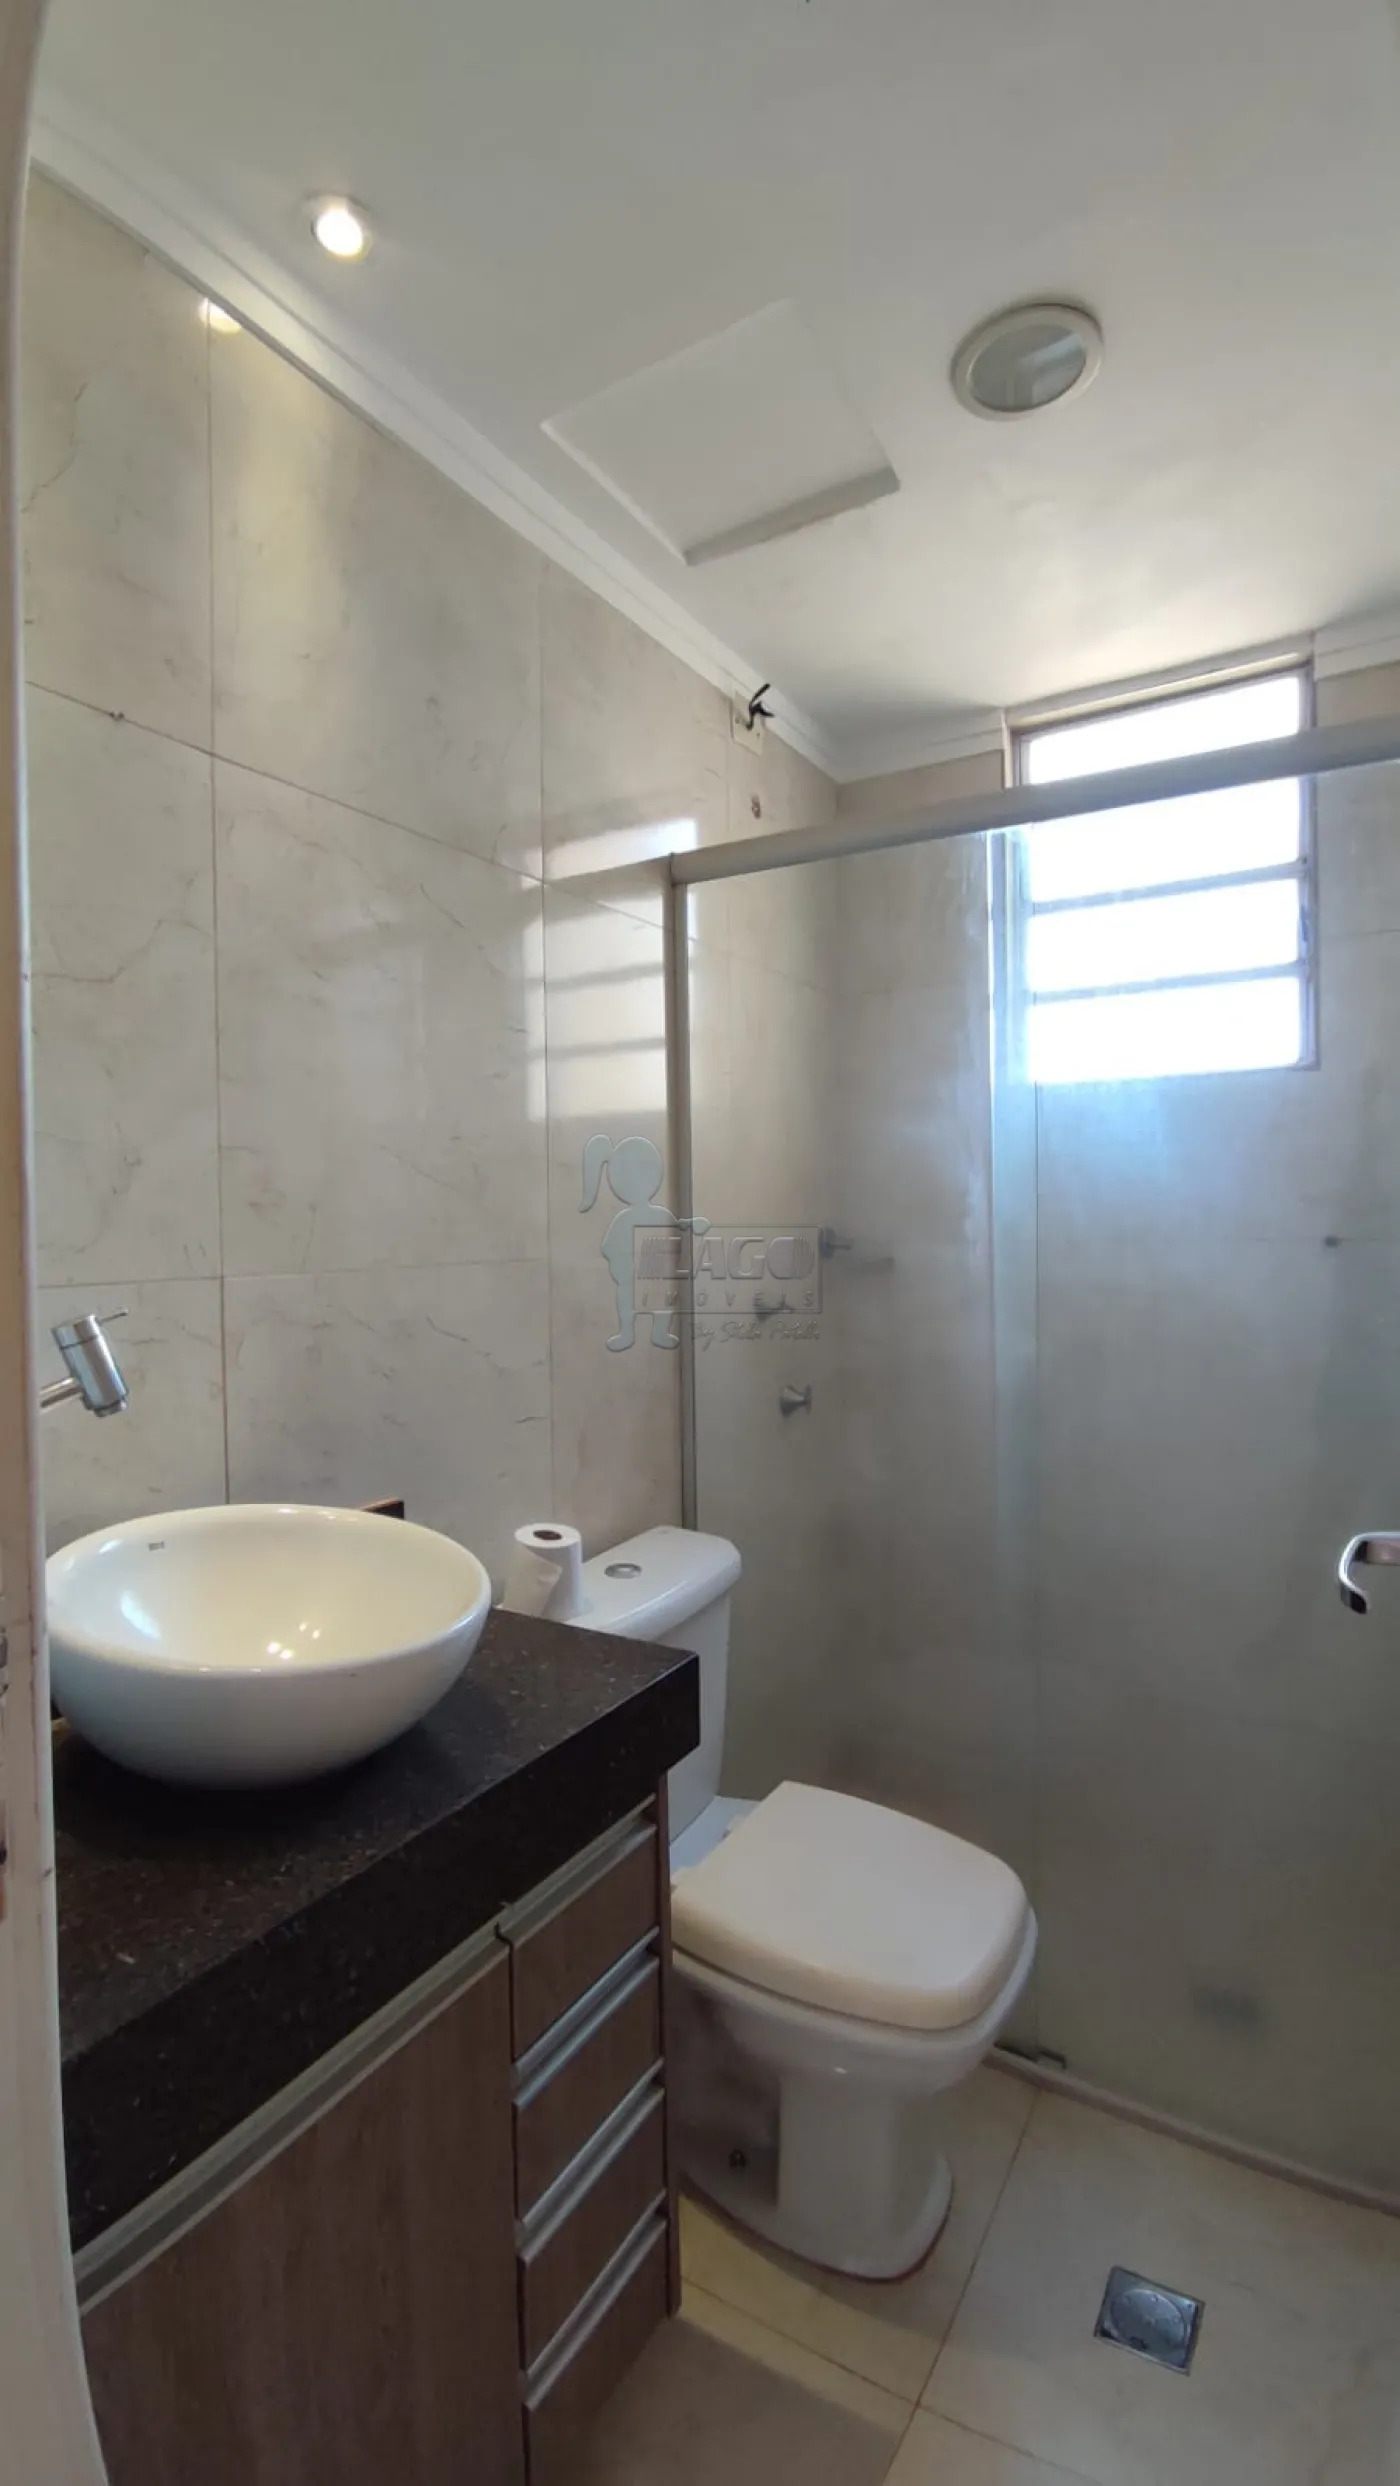 Comprar Apartamento / Cobertura duplex em Ribeirão Preto R$ 350.000,00 - Foto 6